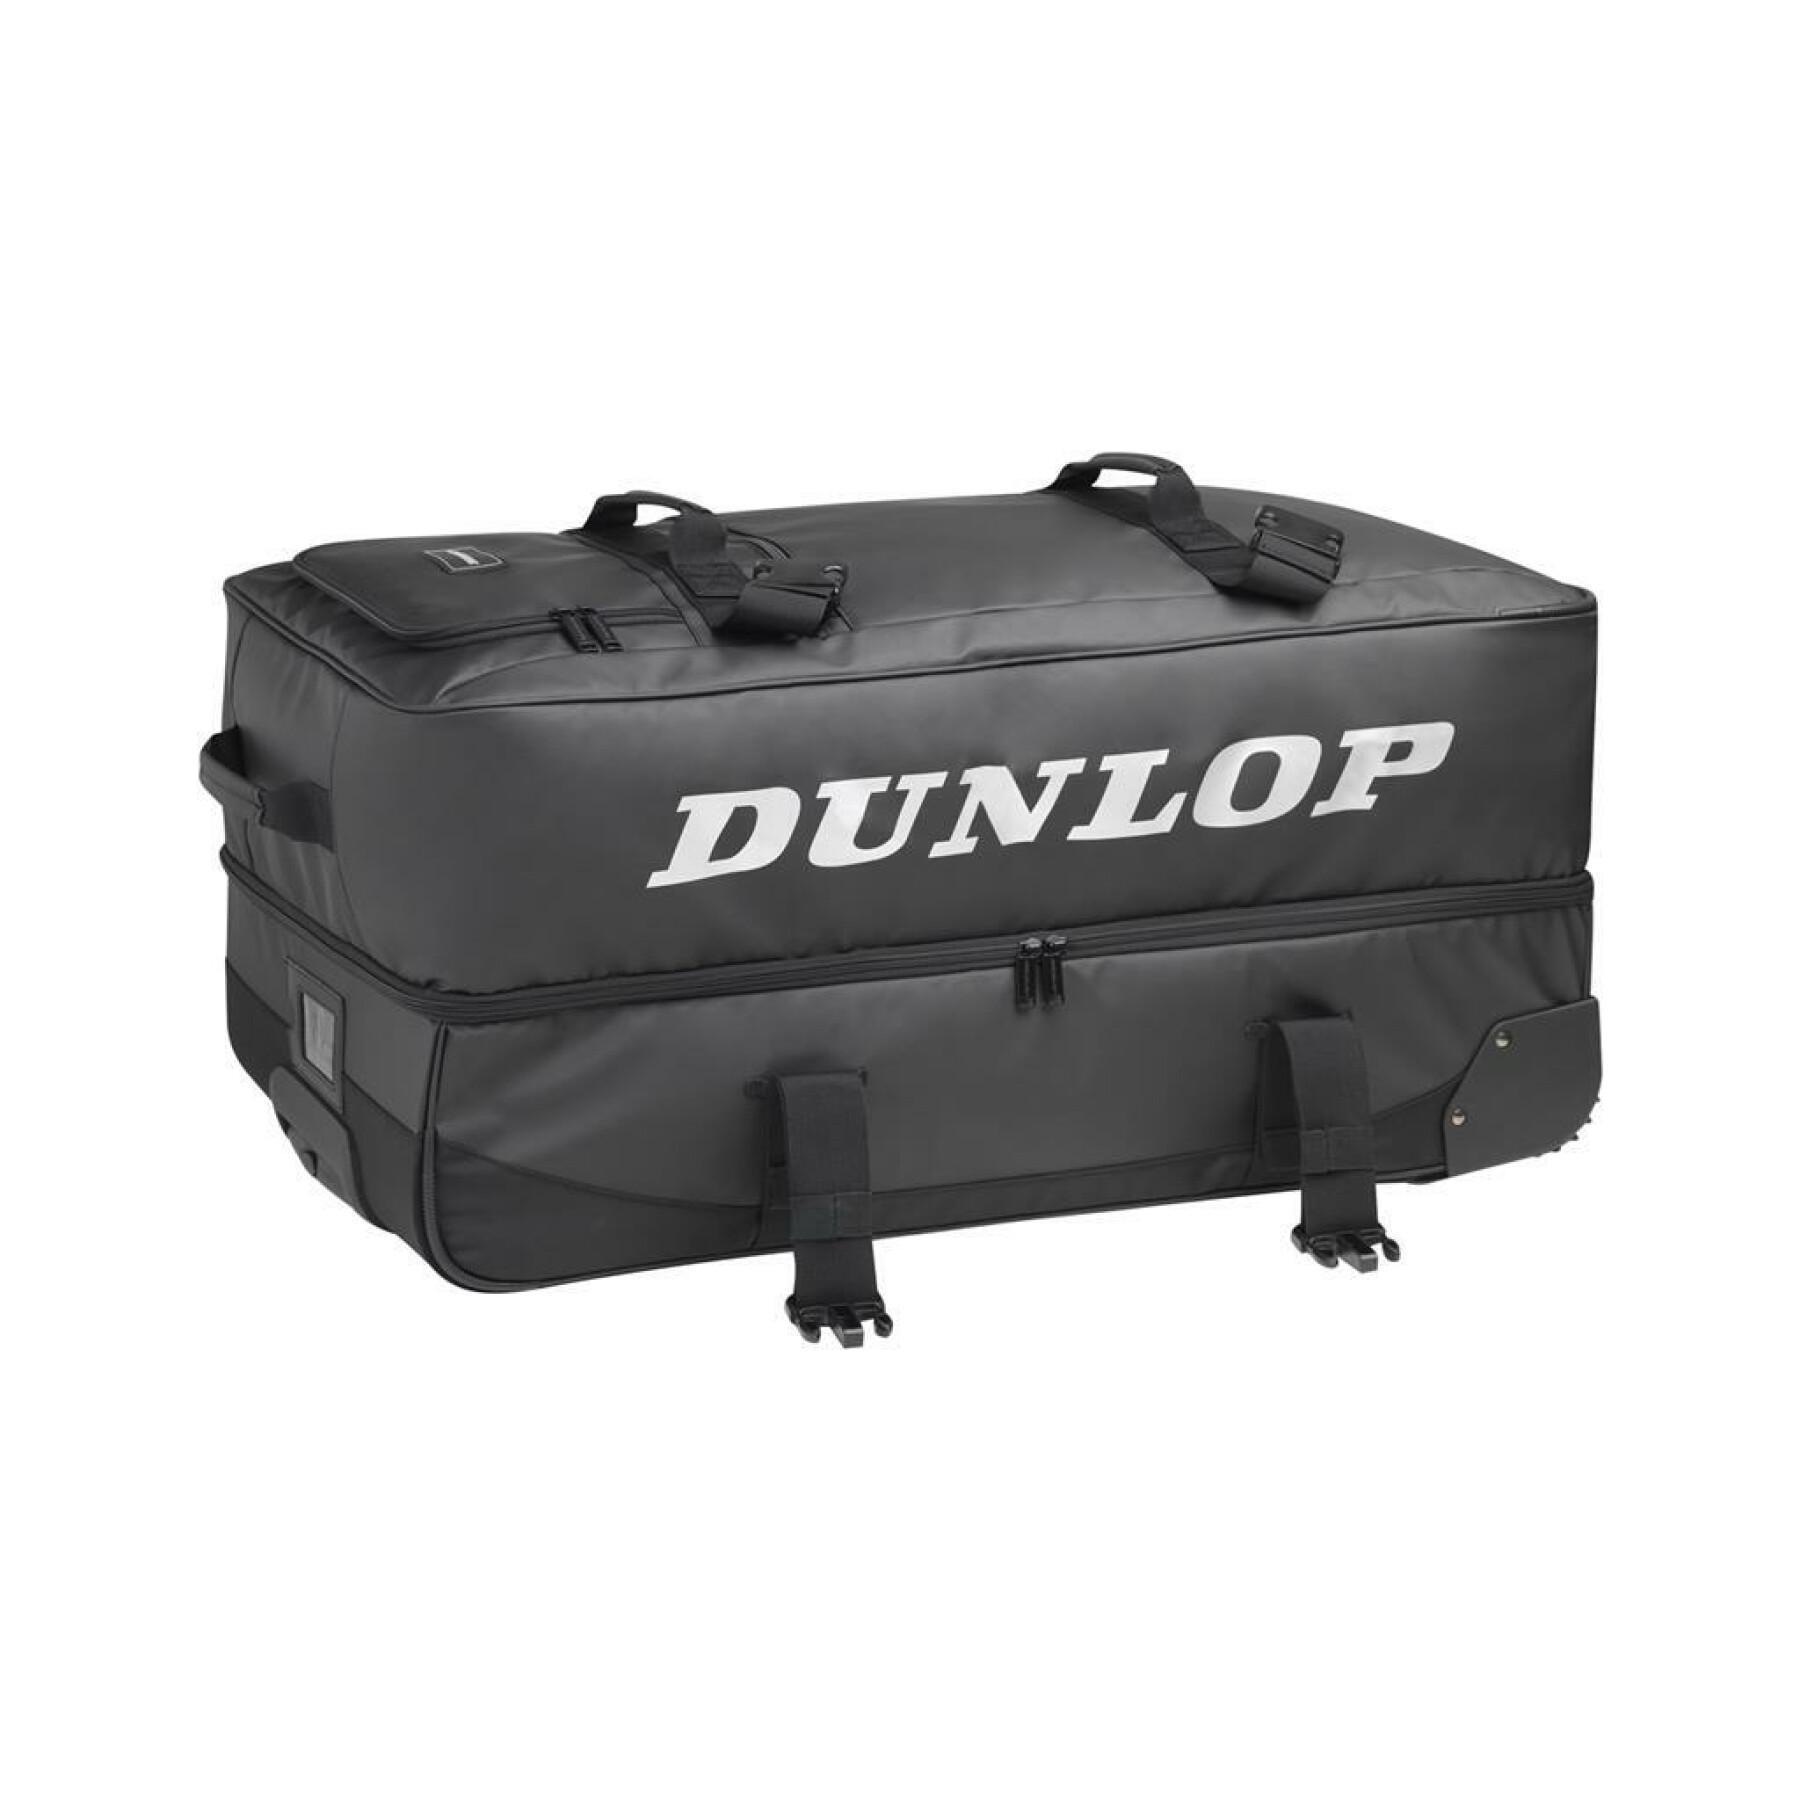 Suitcase Dunlop pro